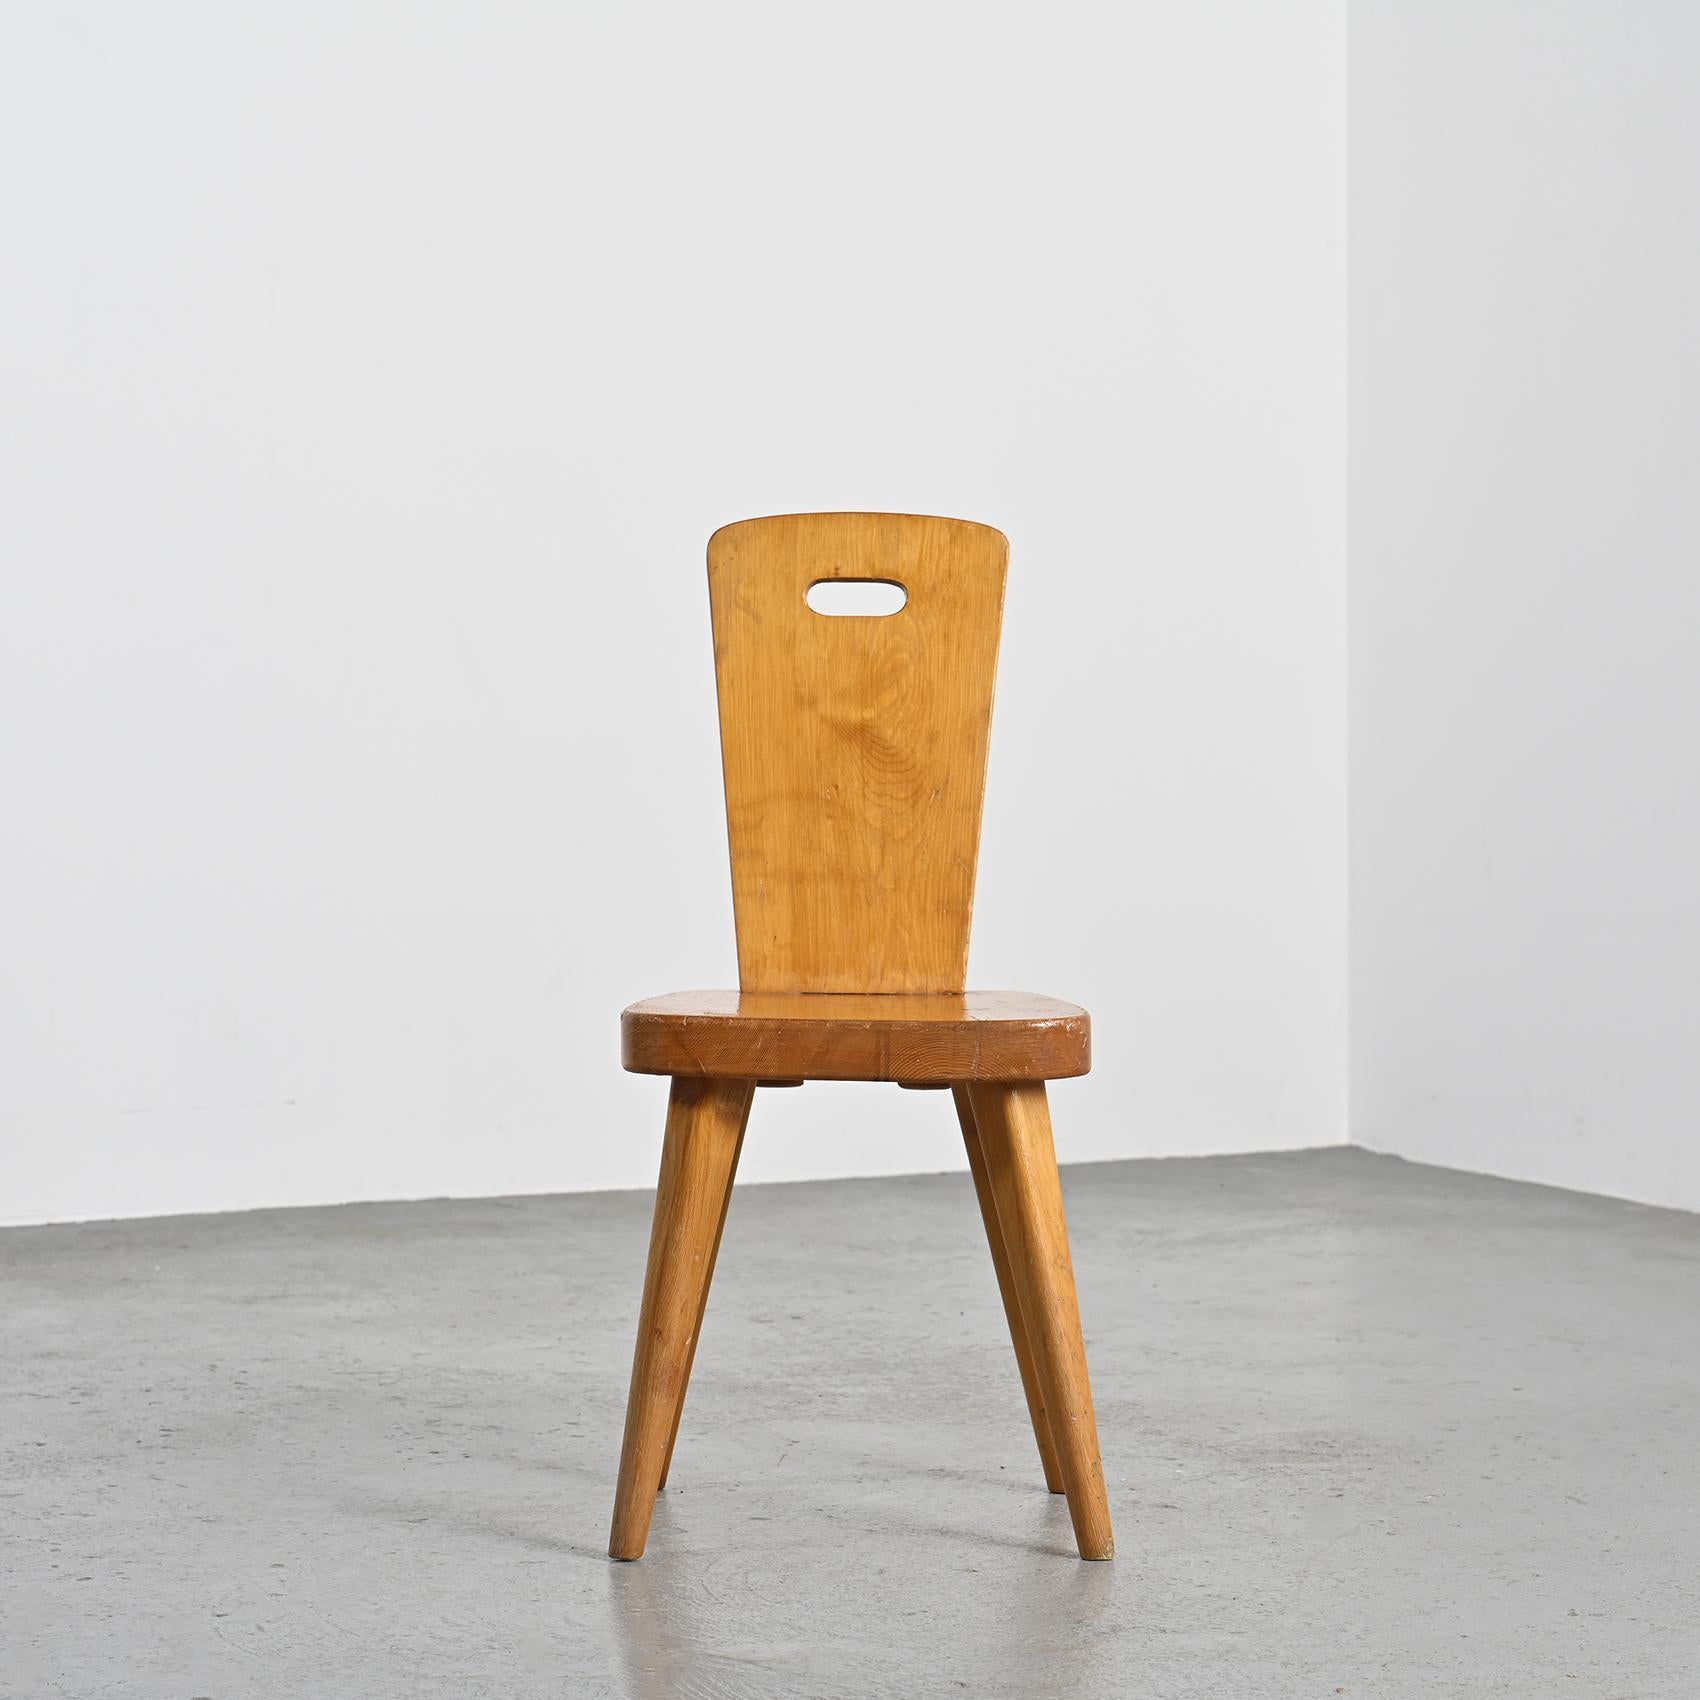 
Der Stuhl wurde von Christian Durupt entworfen, einem berühmten französischen Möbelschreiner, der für seine Zusammenarbeit mit Charlotte Perriand bekannt ist.

Er ist aus massivem Kiefernholz gefertigt, das für seine Robustheit geschätzt wird, und